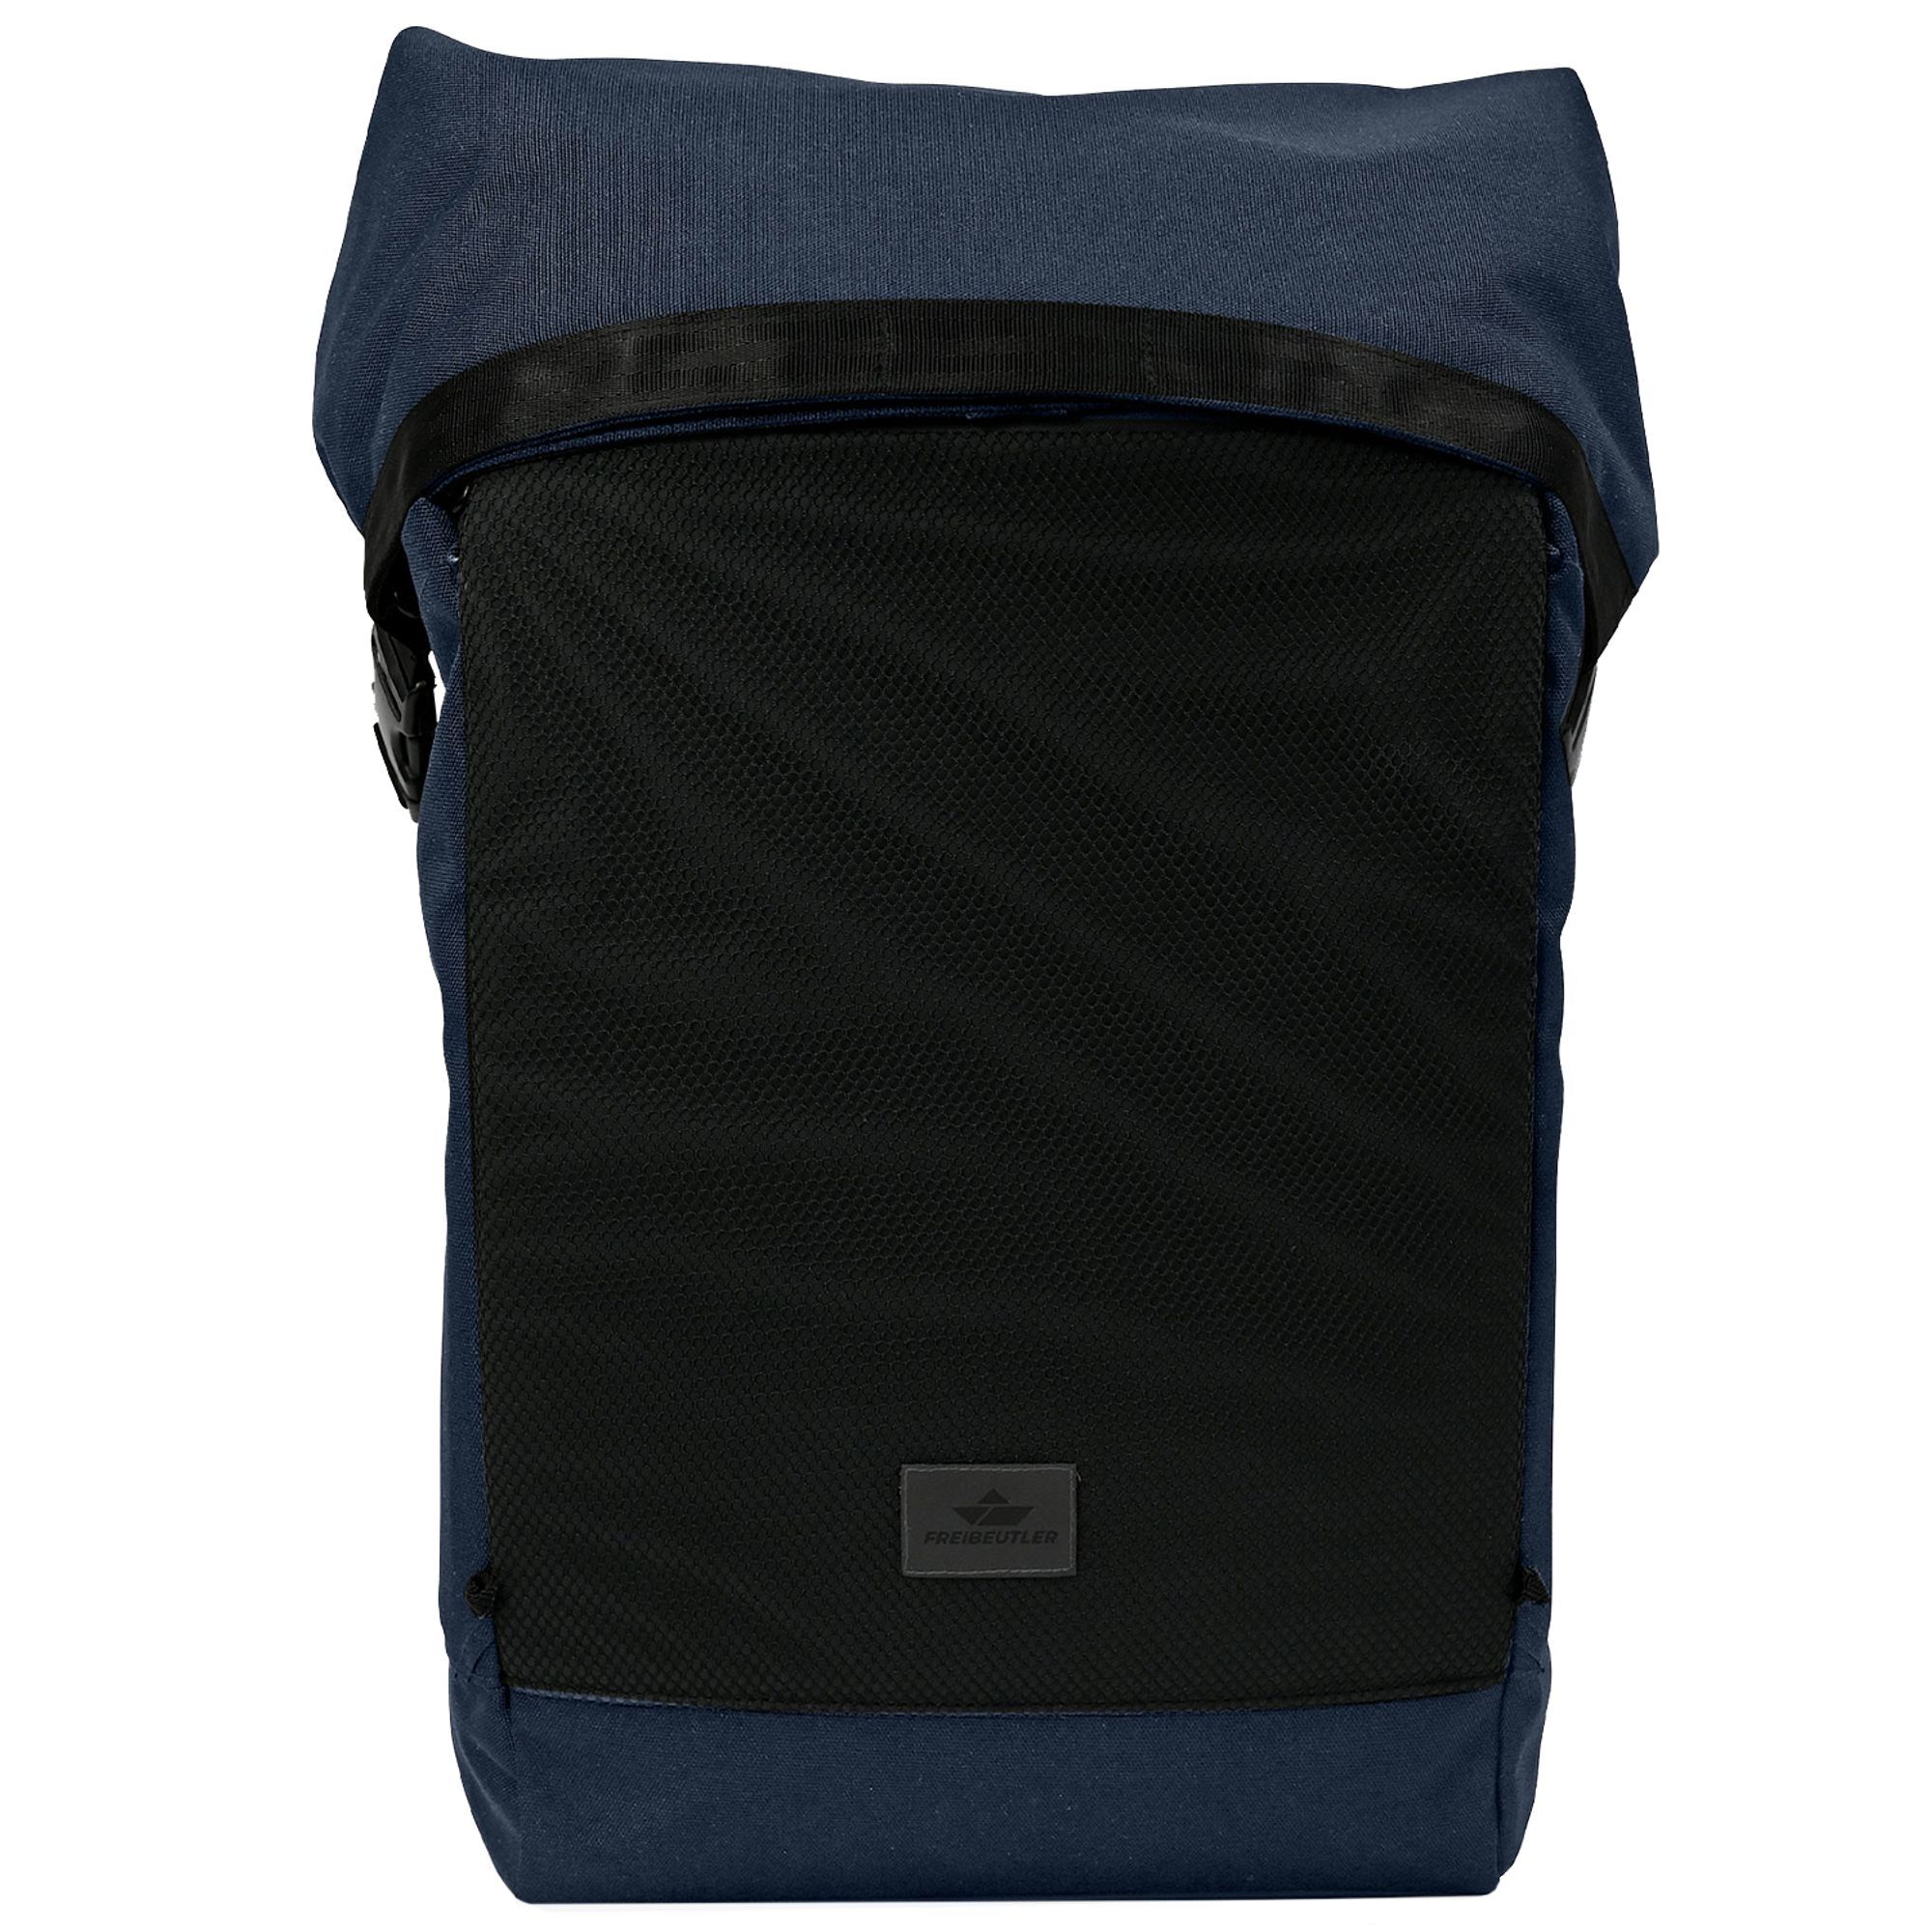 Рюкзак Freibeutler Bente 50 cm Laptopfach, темно синий рюкзак ogio bandit pro 51 cm laptopfach темно синий